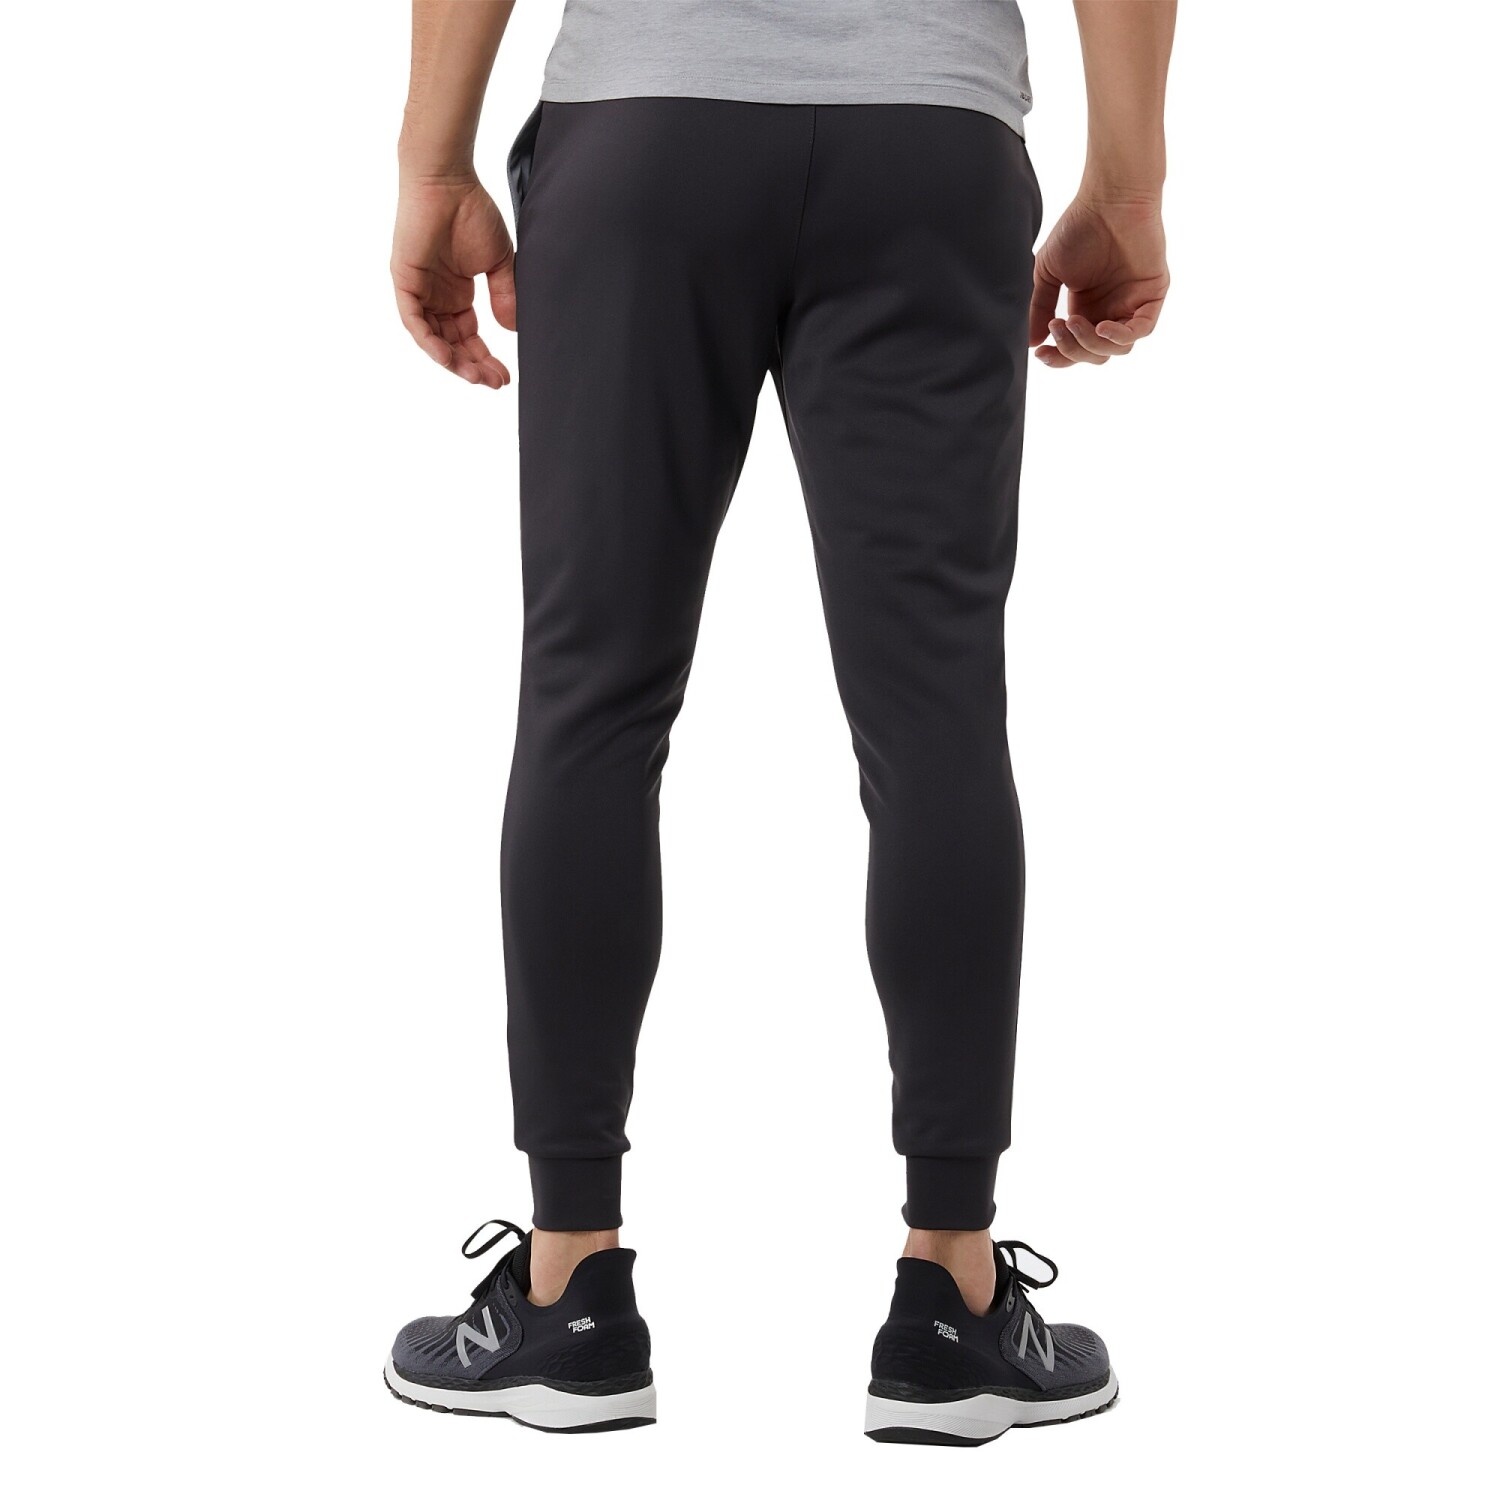 Pantalon Nike Running Hombre Df Chllgr Knit Pant Black/ - S/C — Menpi